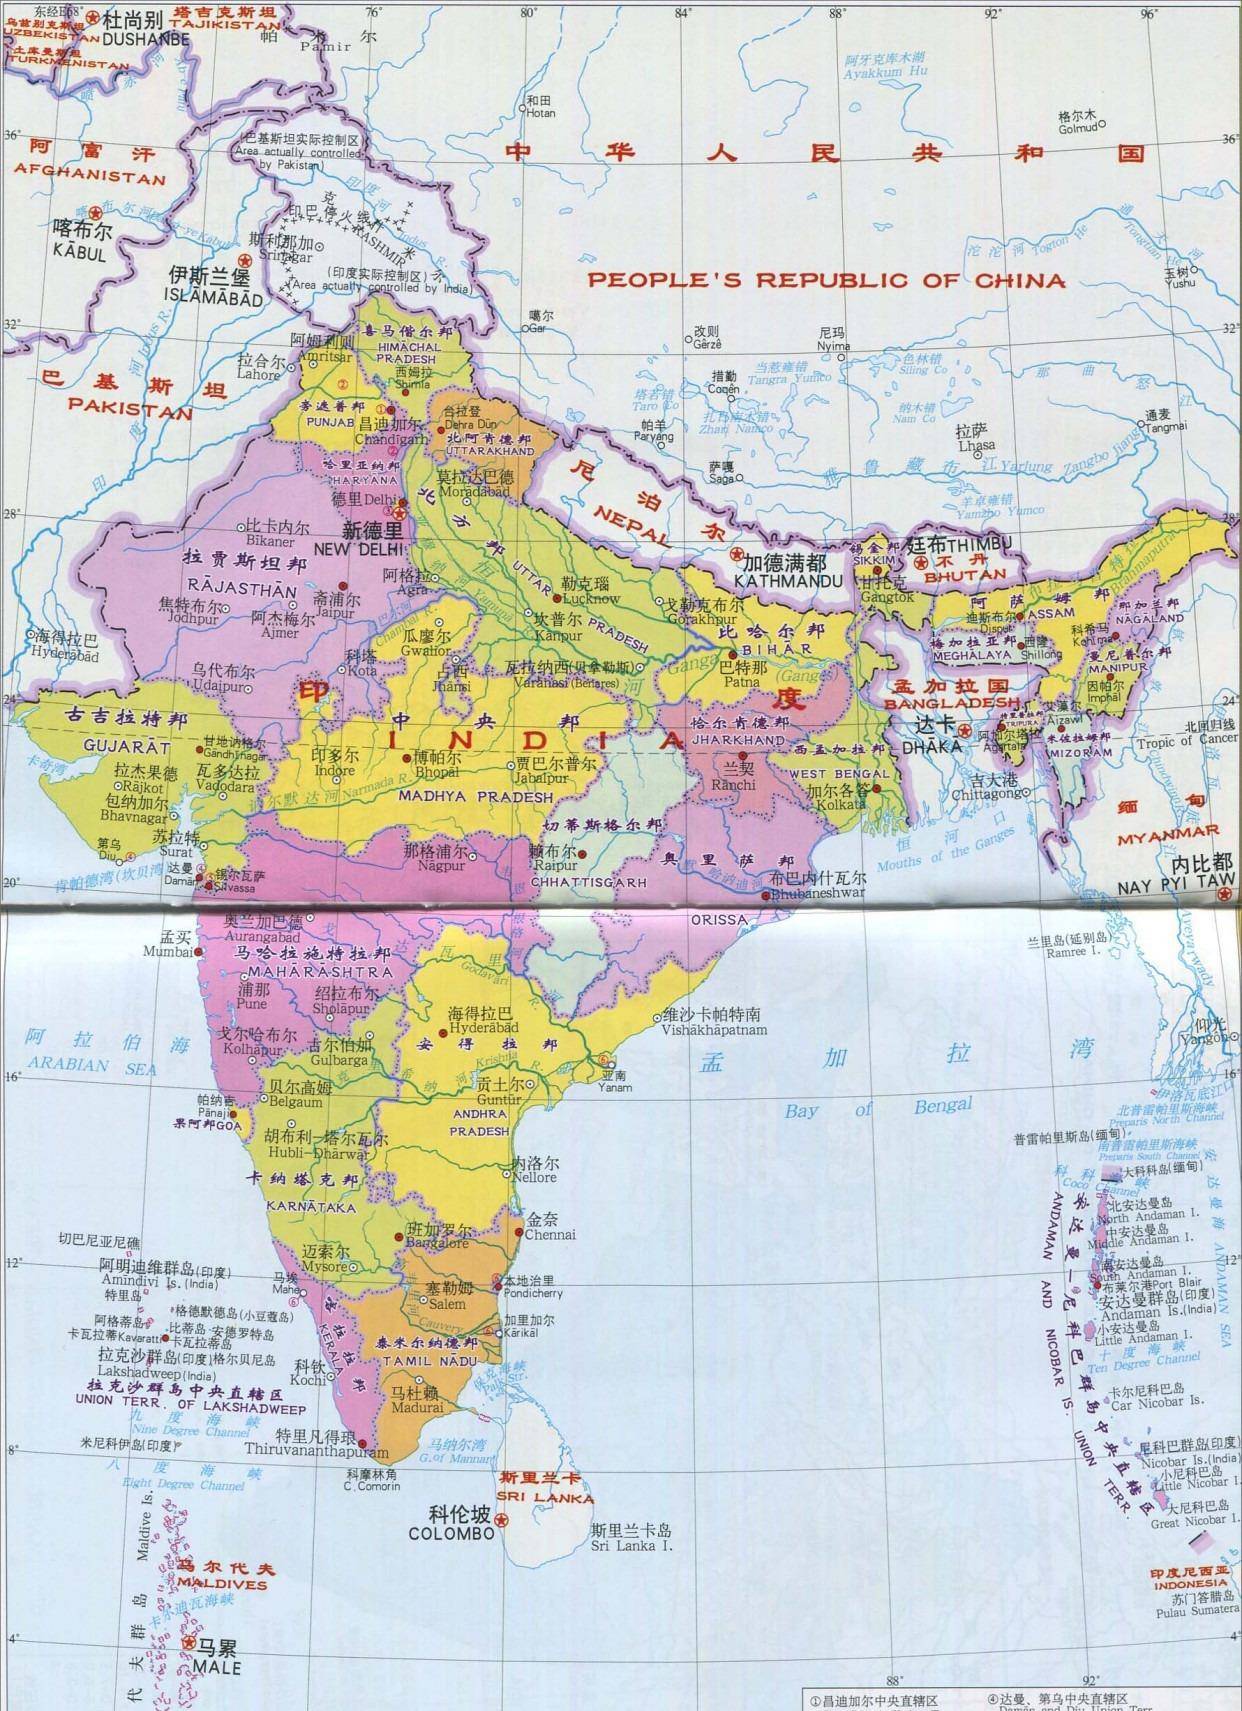 英属印度面积图片